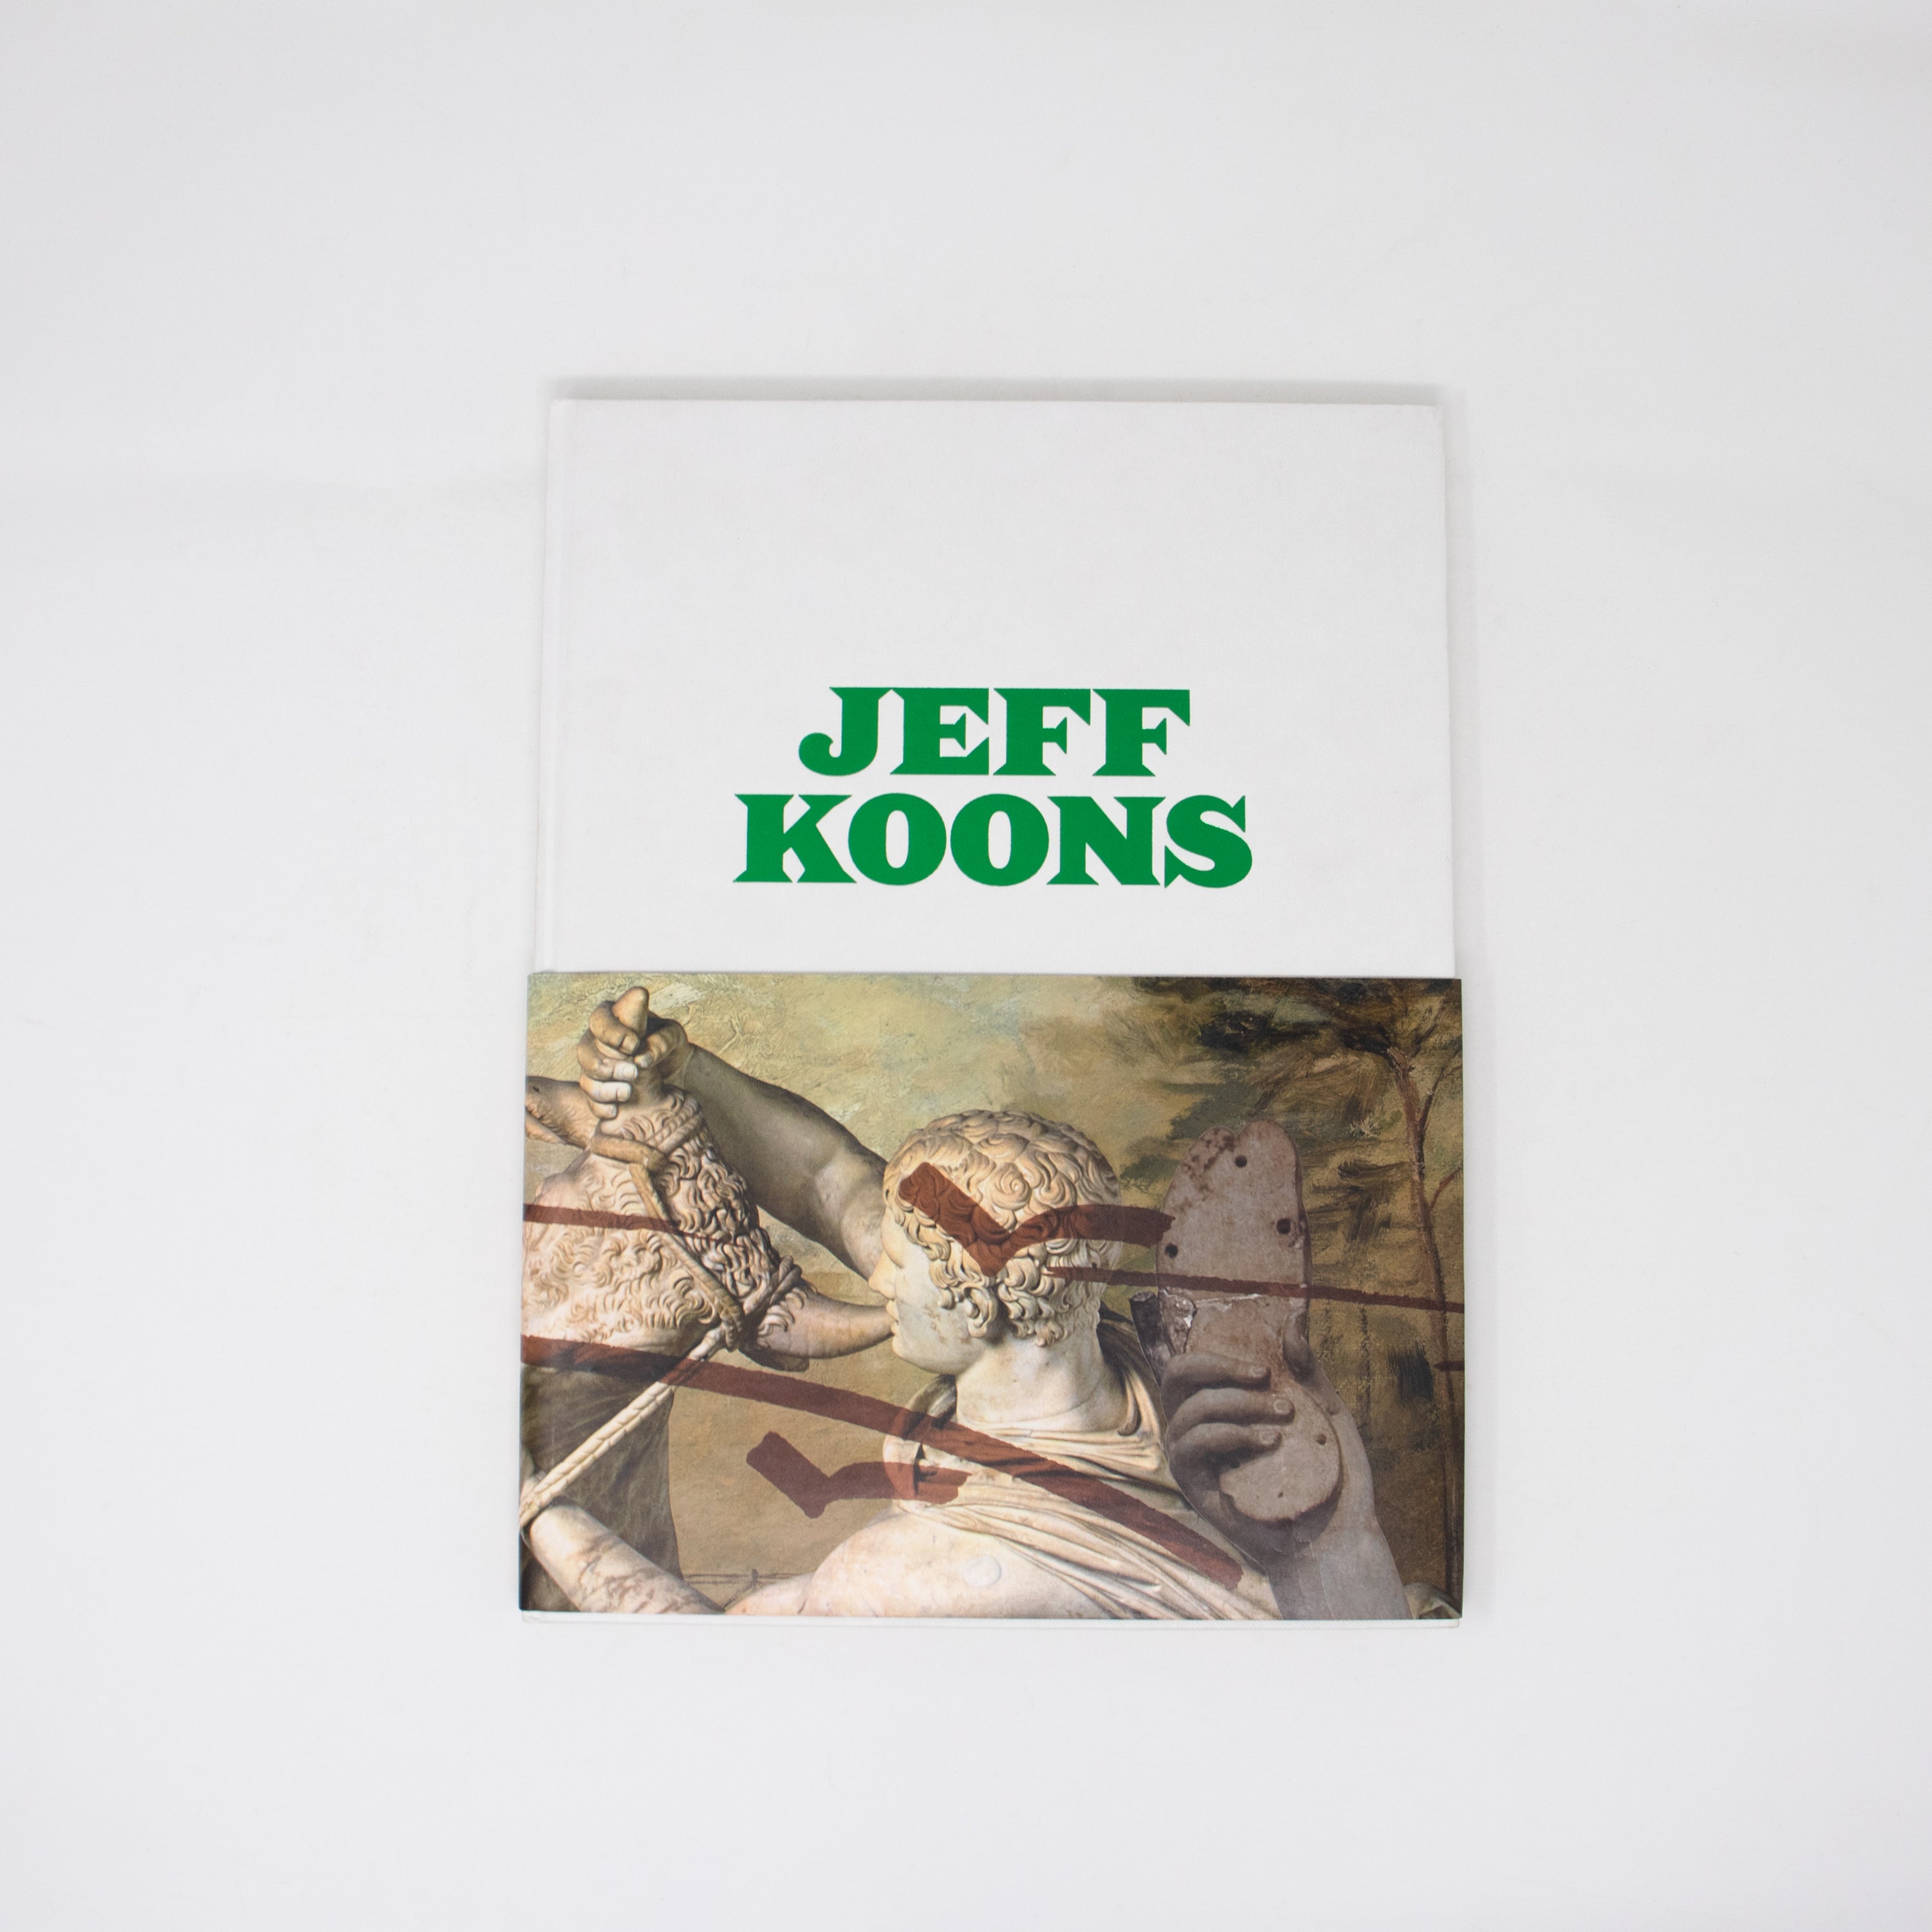 Jeff Koons at Almine Rech